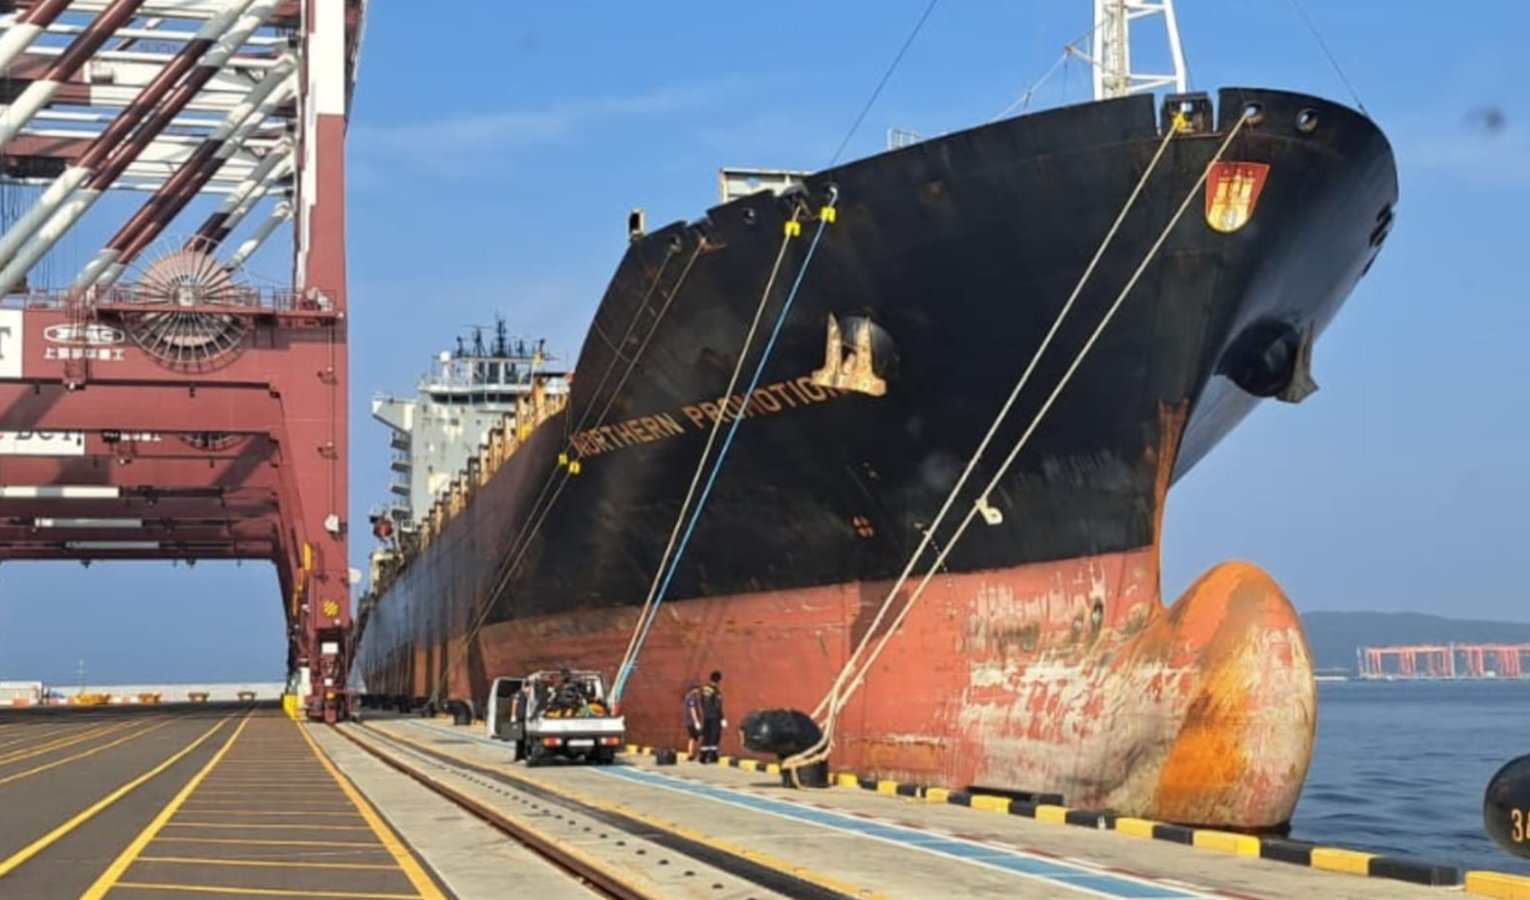 Porti: ecco le prime due nave full container della Ignazio Messina & C.